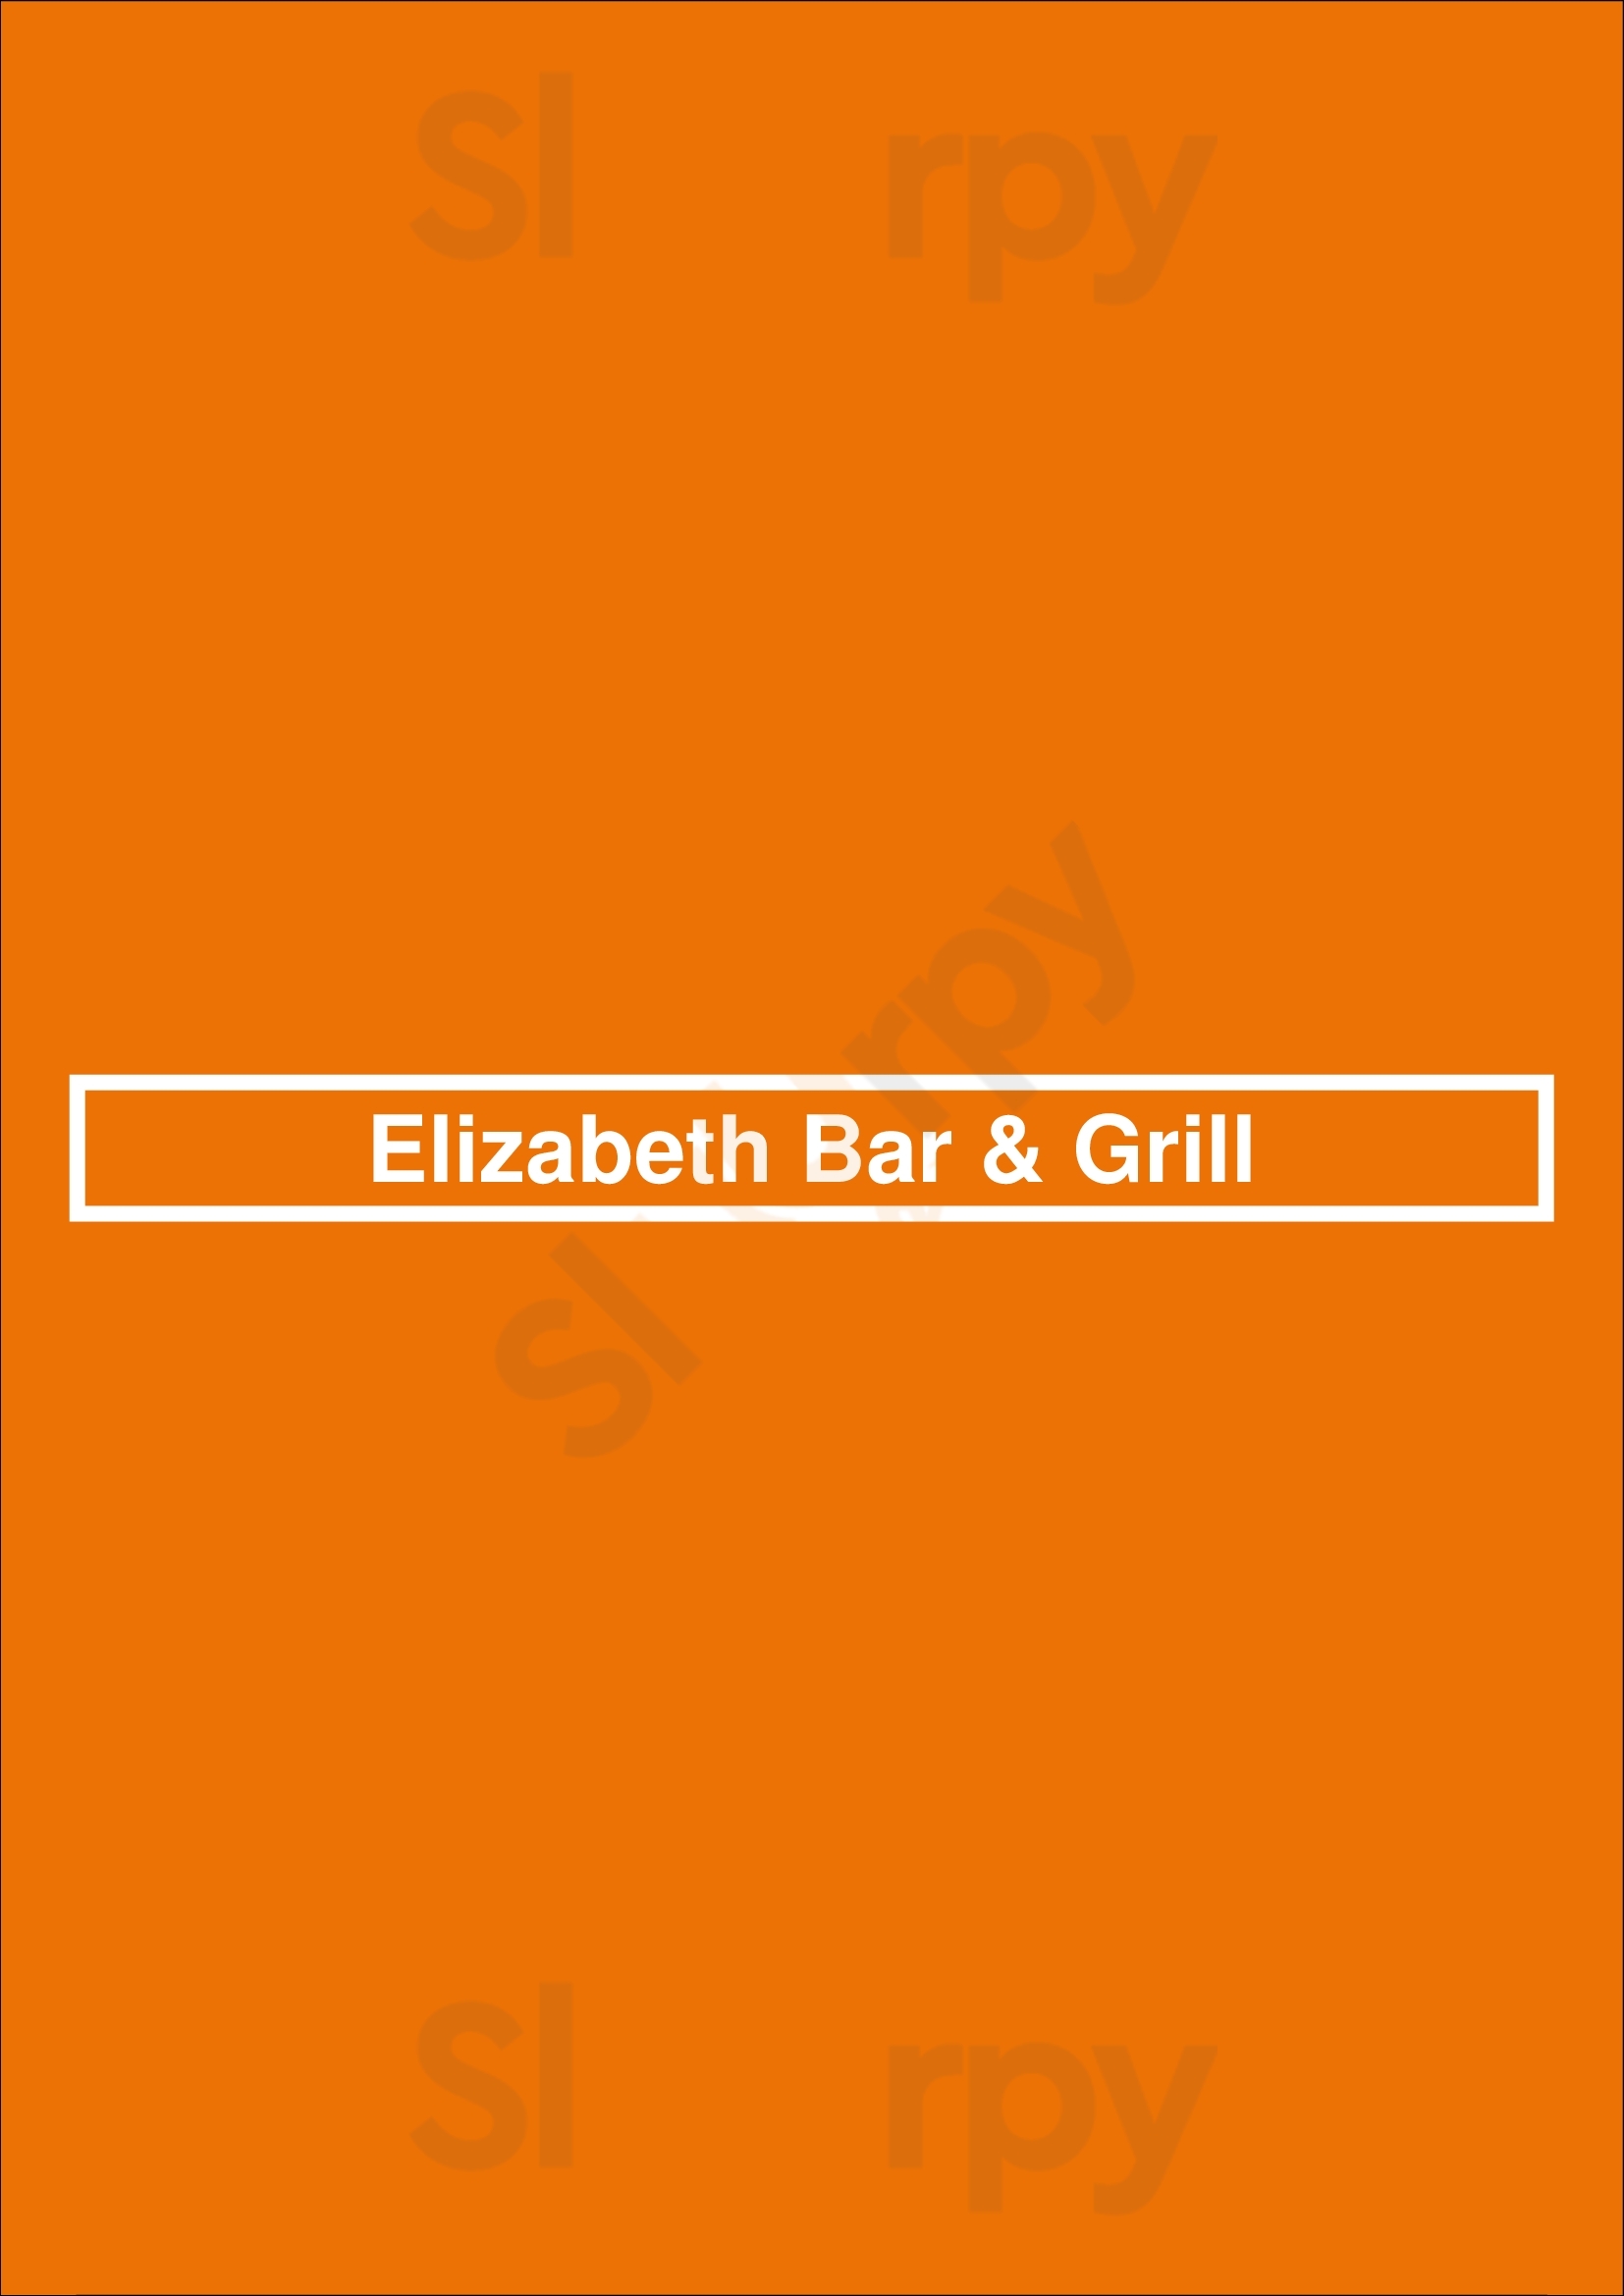 Elizabeth Bar & Grill Washington DC Menu - 1